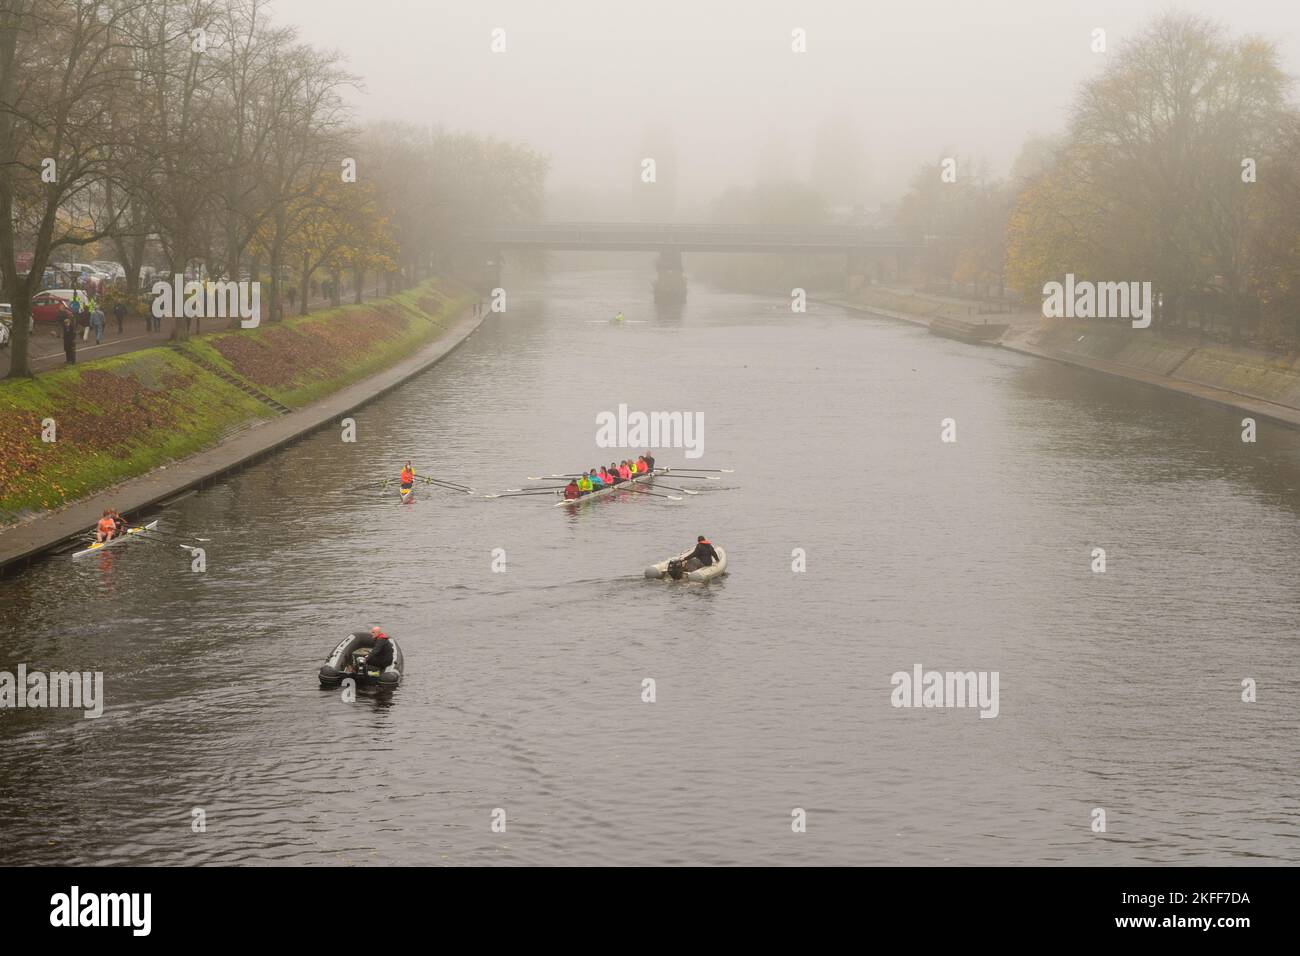 Équipe d'aviron sur la rivière Ouse, York, novembre brume et brouillard, Royaume-Uni Banque D'Images